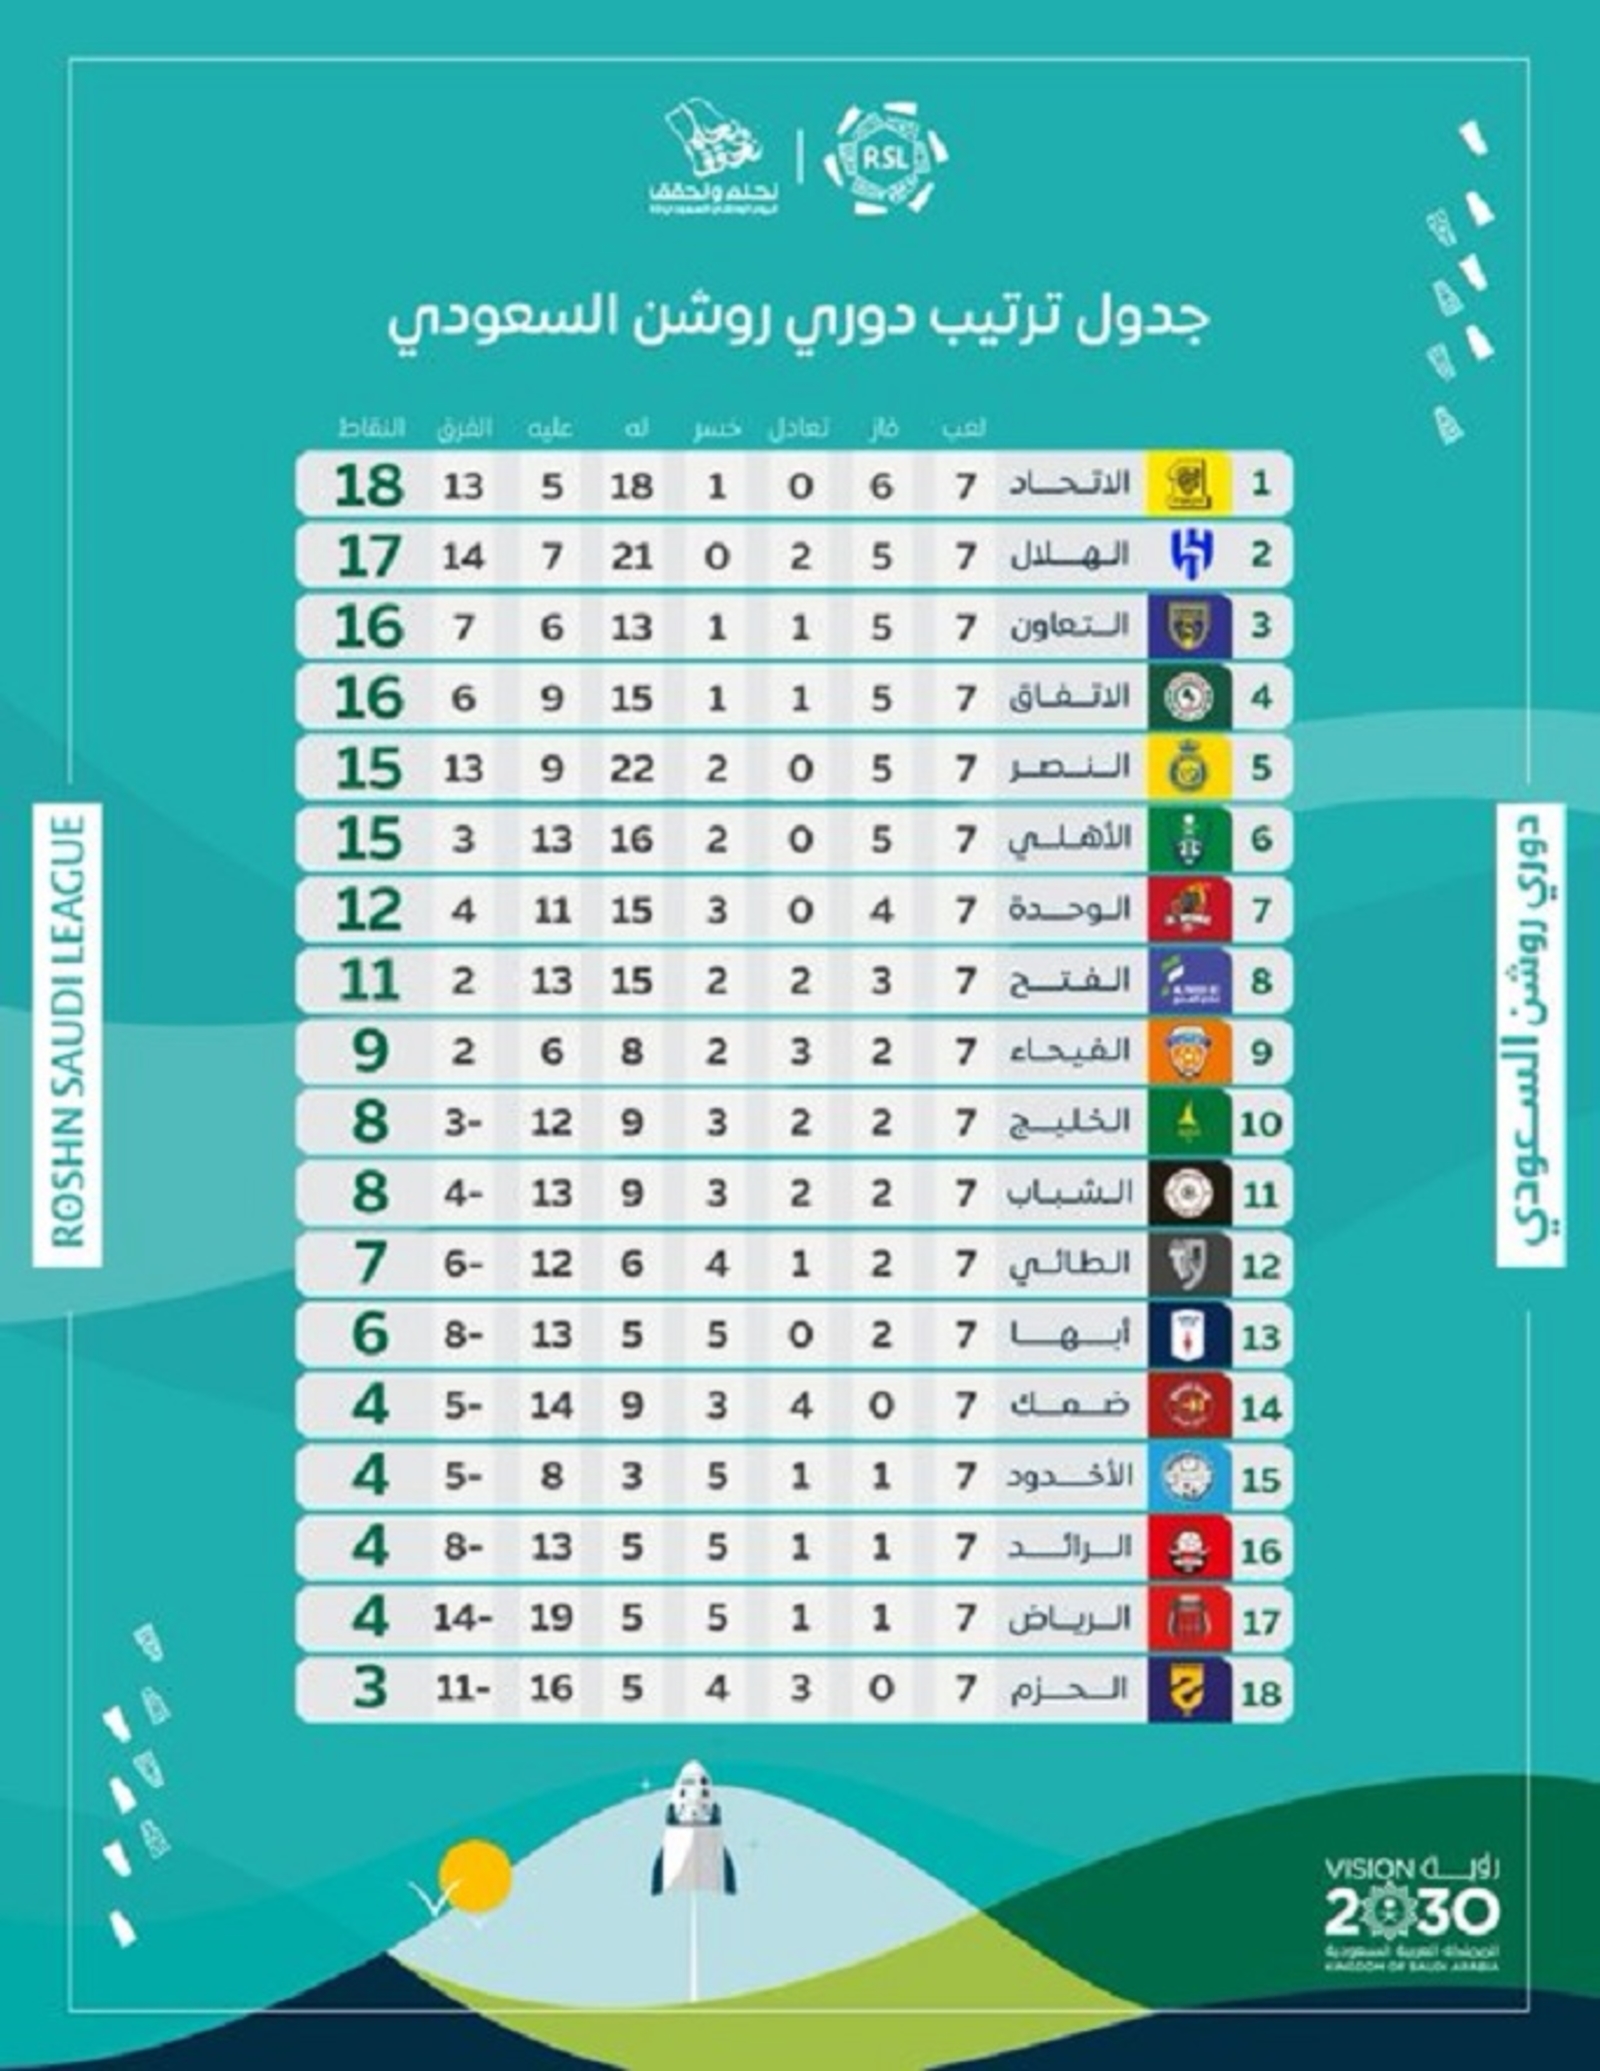 تحليل شامل لجدول ترتيب الفرق قبل اللقاء الكبير في الدوري السعودي - العوامل المؤثرة والتوقعات للمواجهة الكبيرة